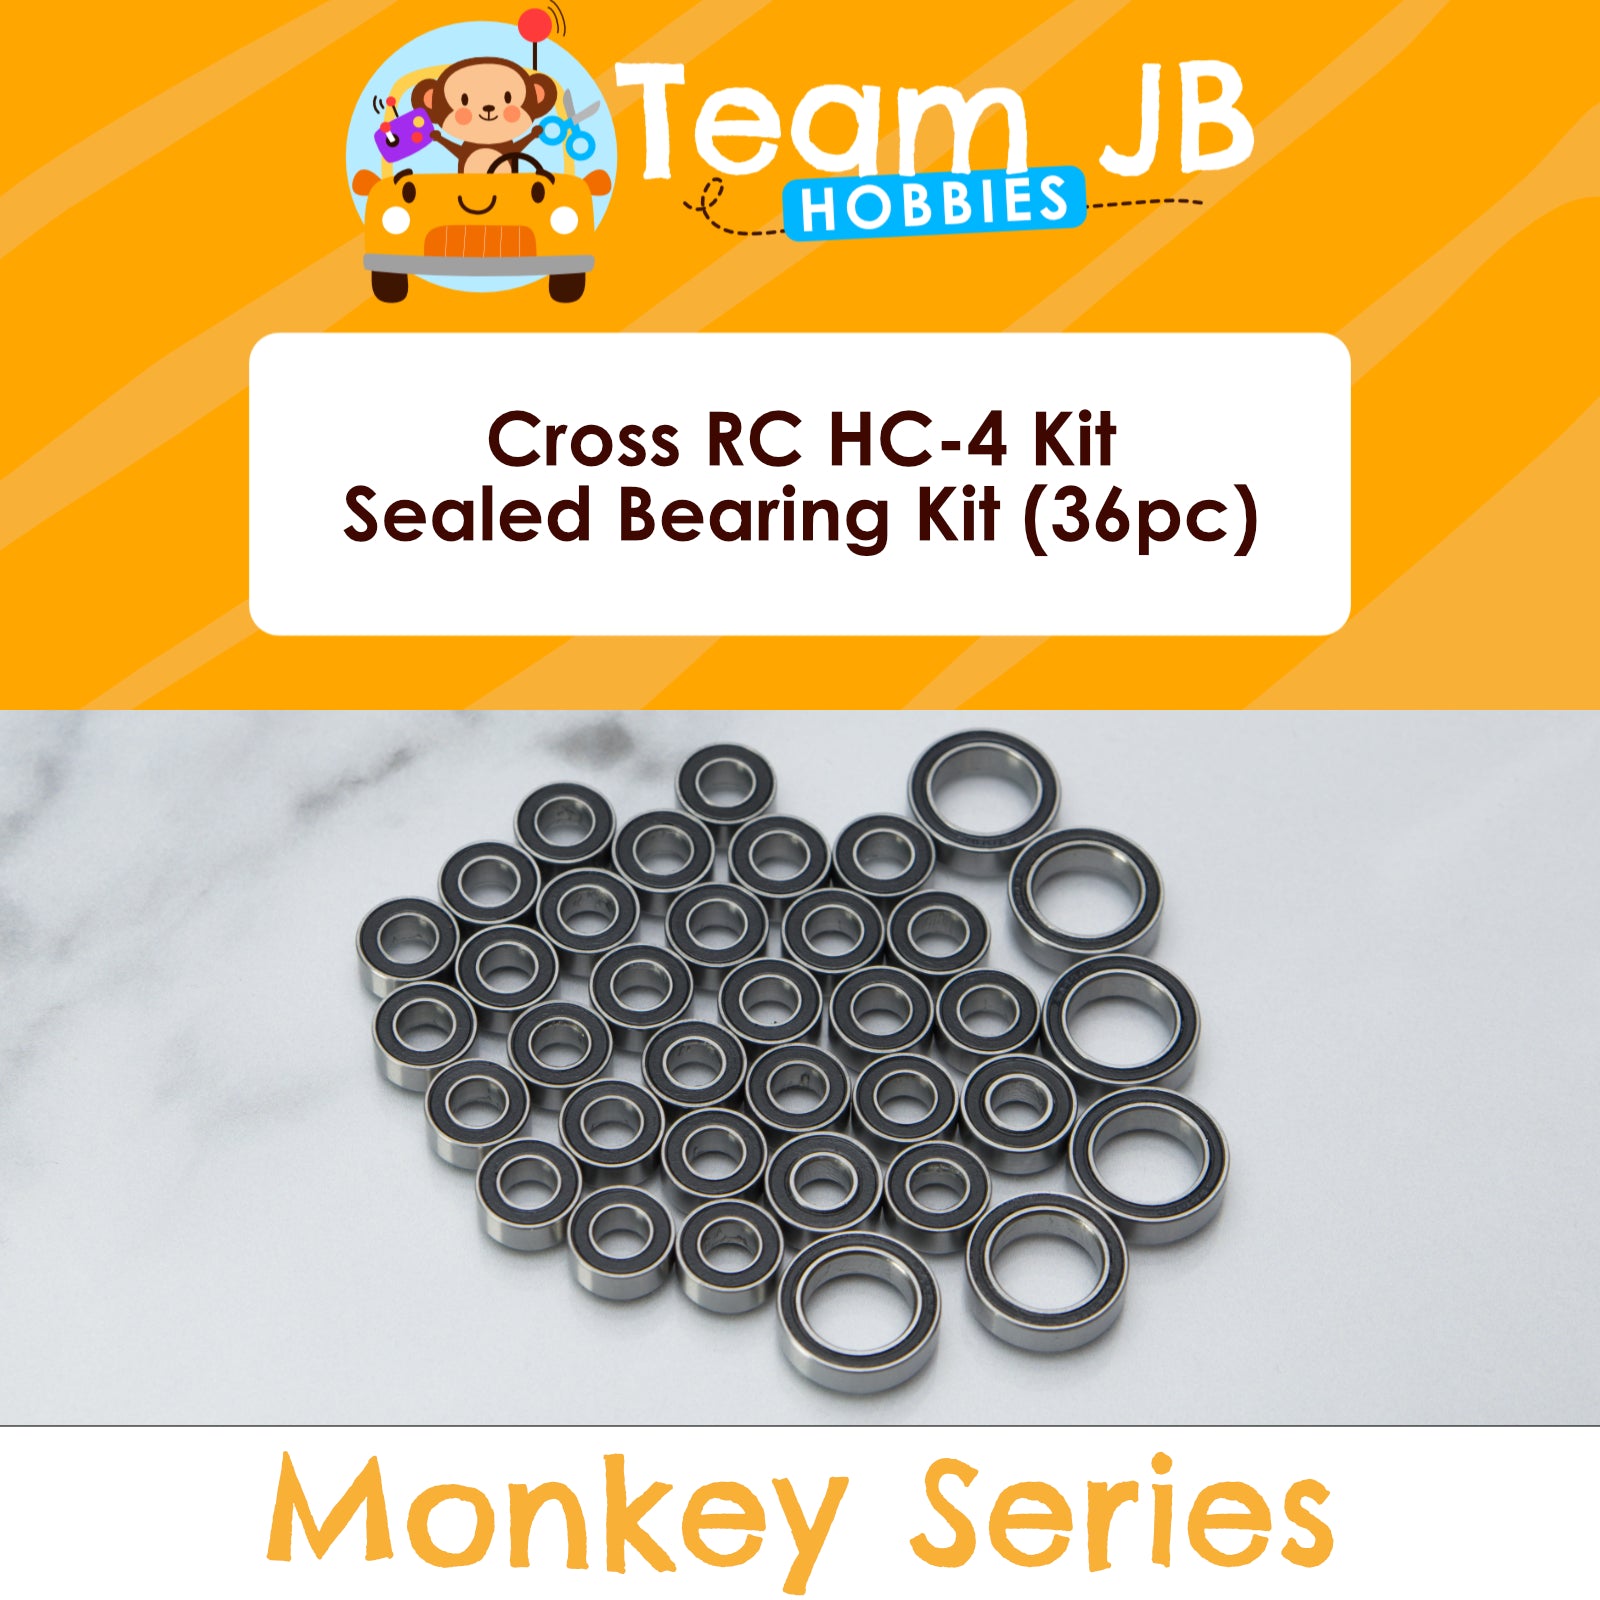 Cross RC HC-4 Kit - Sealed Bearing Kit